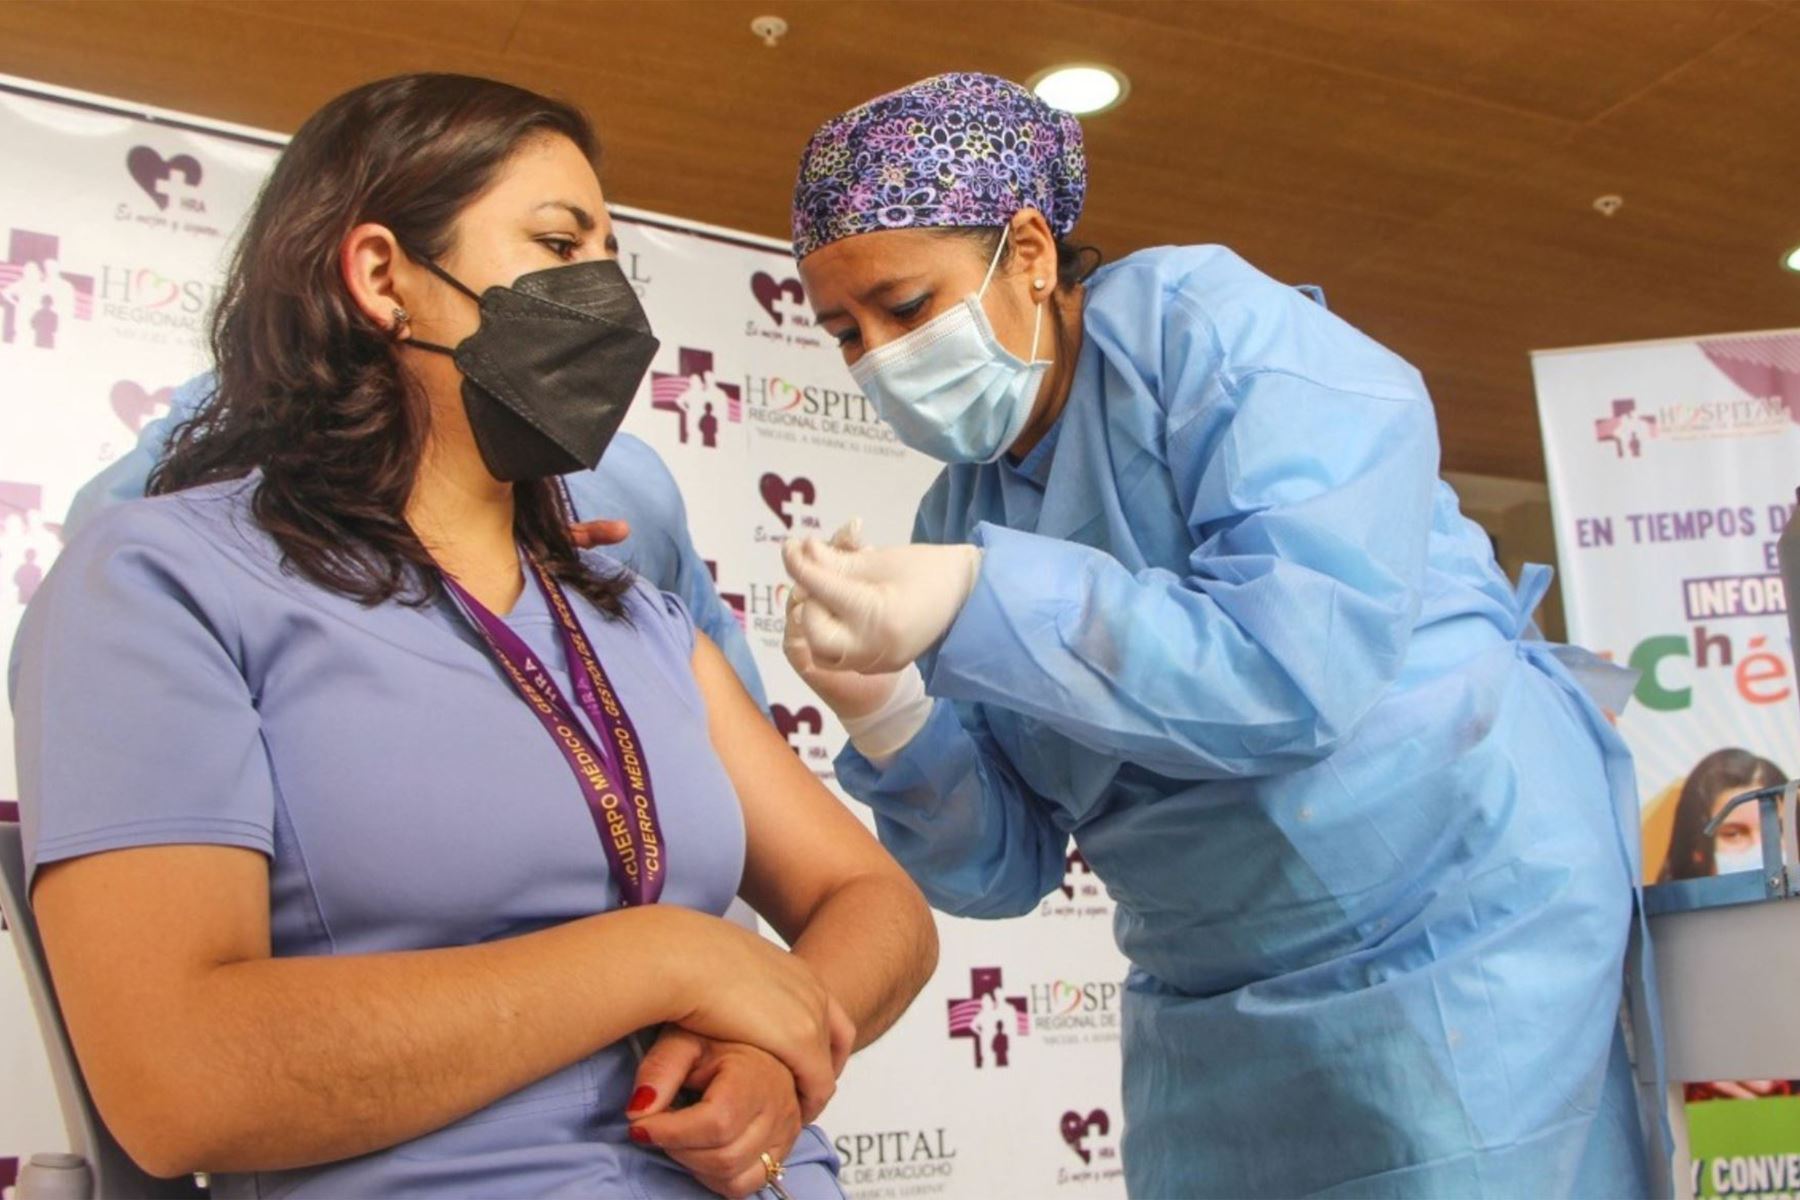 La Diresa Ayacucho hizo un llamado a los docentes a recibir la vacuna contra el covid-19 para garantizar el reinicio de las clases presenciales.Foto: Cortesía.